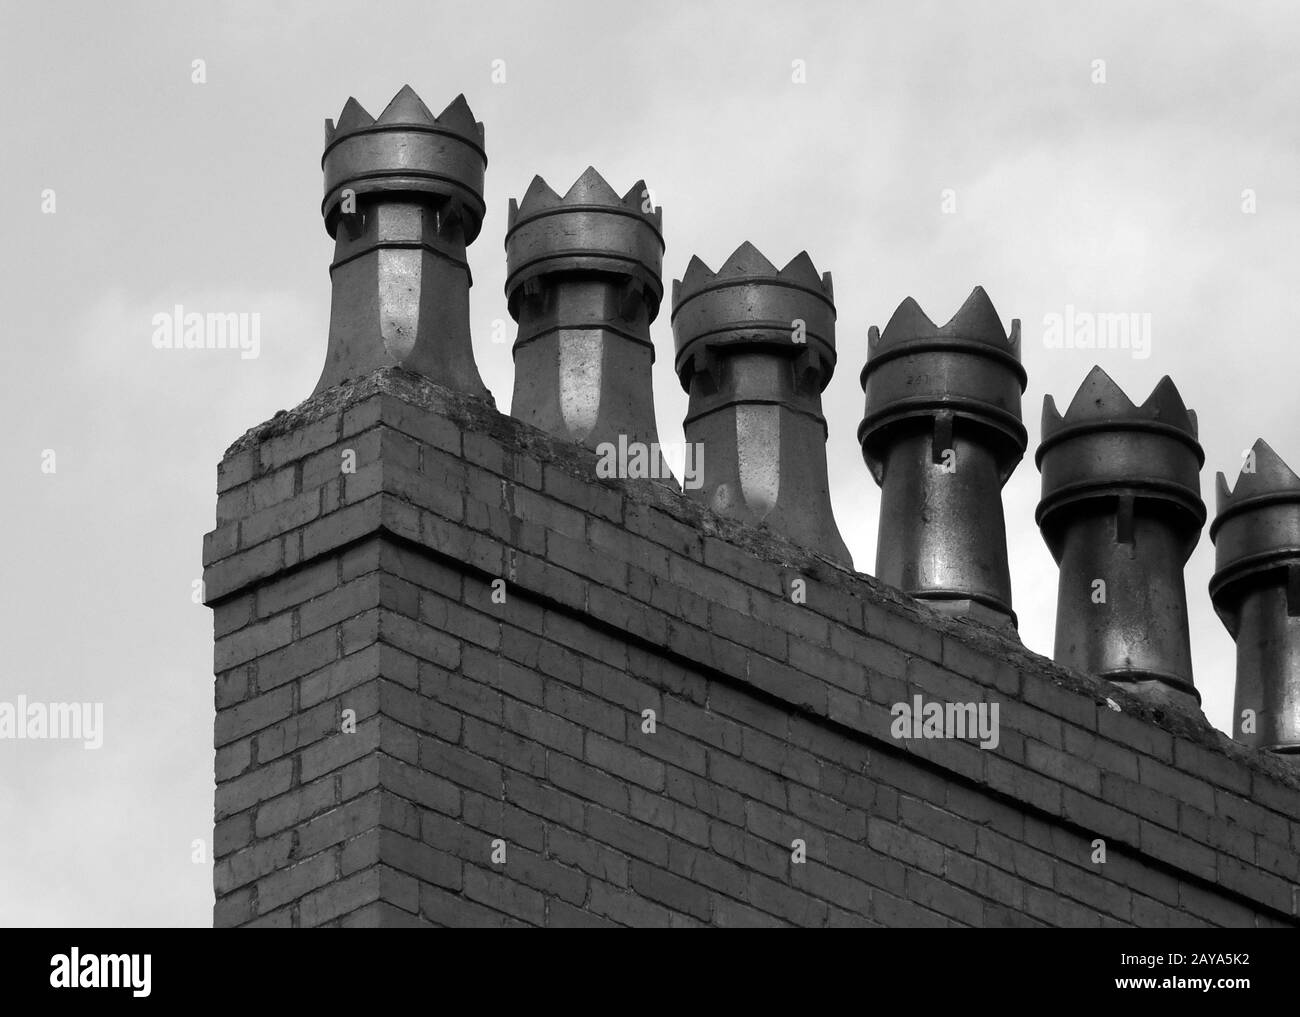 image monochrome d'une rangée de pots de cheminée à l'ancienne sur une maison en brique Banque D'Images